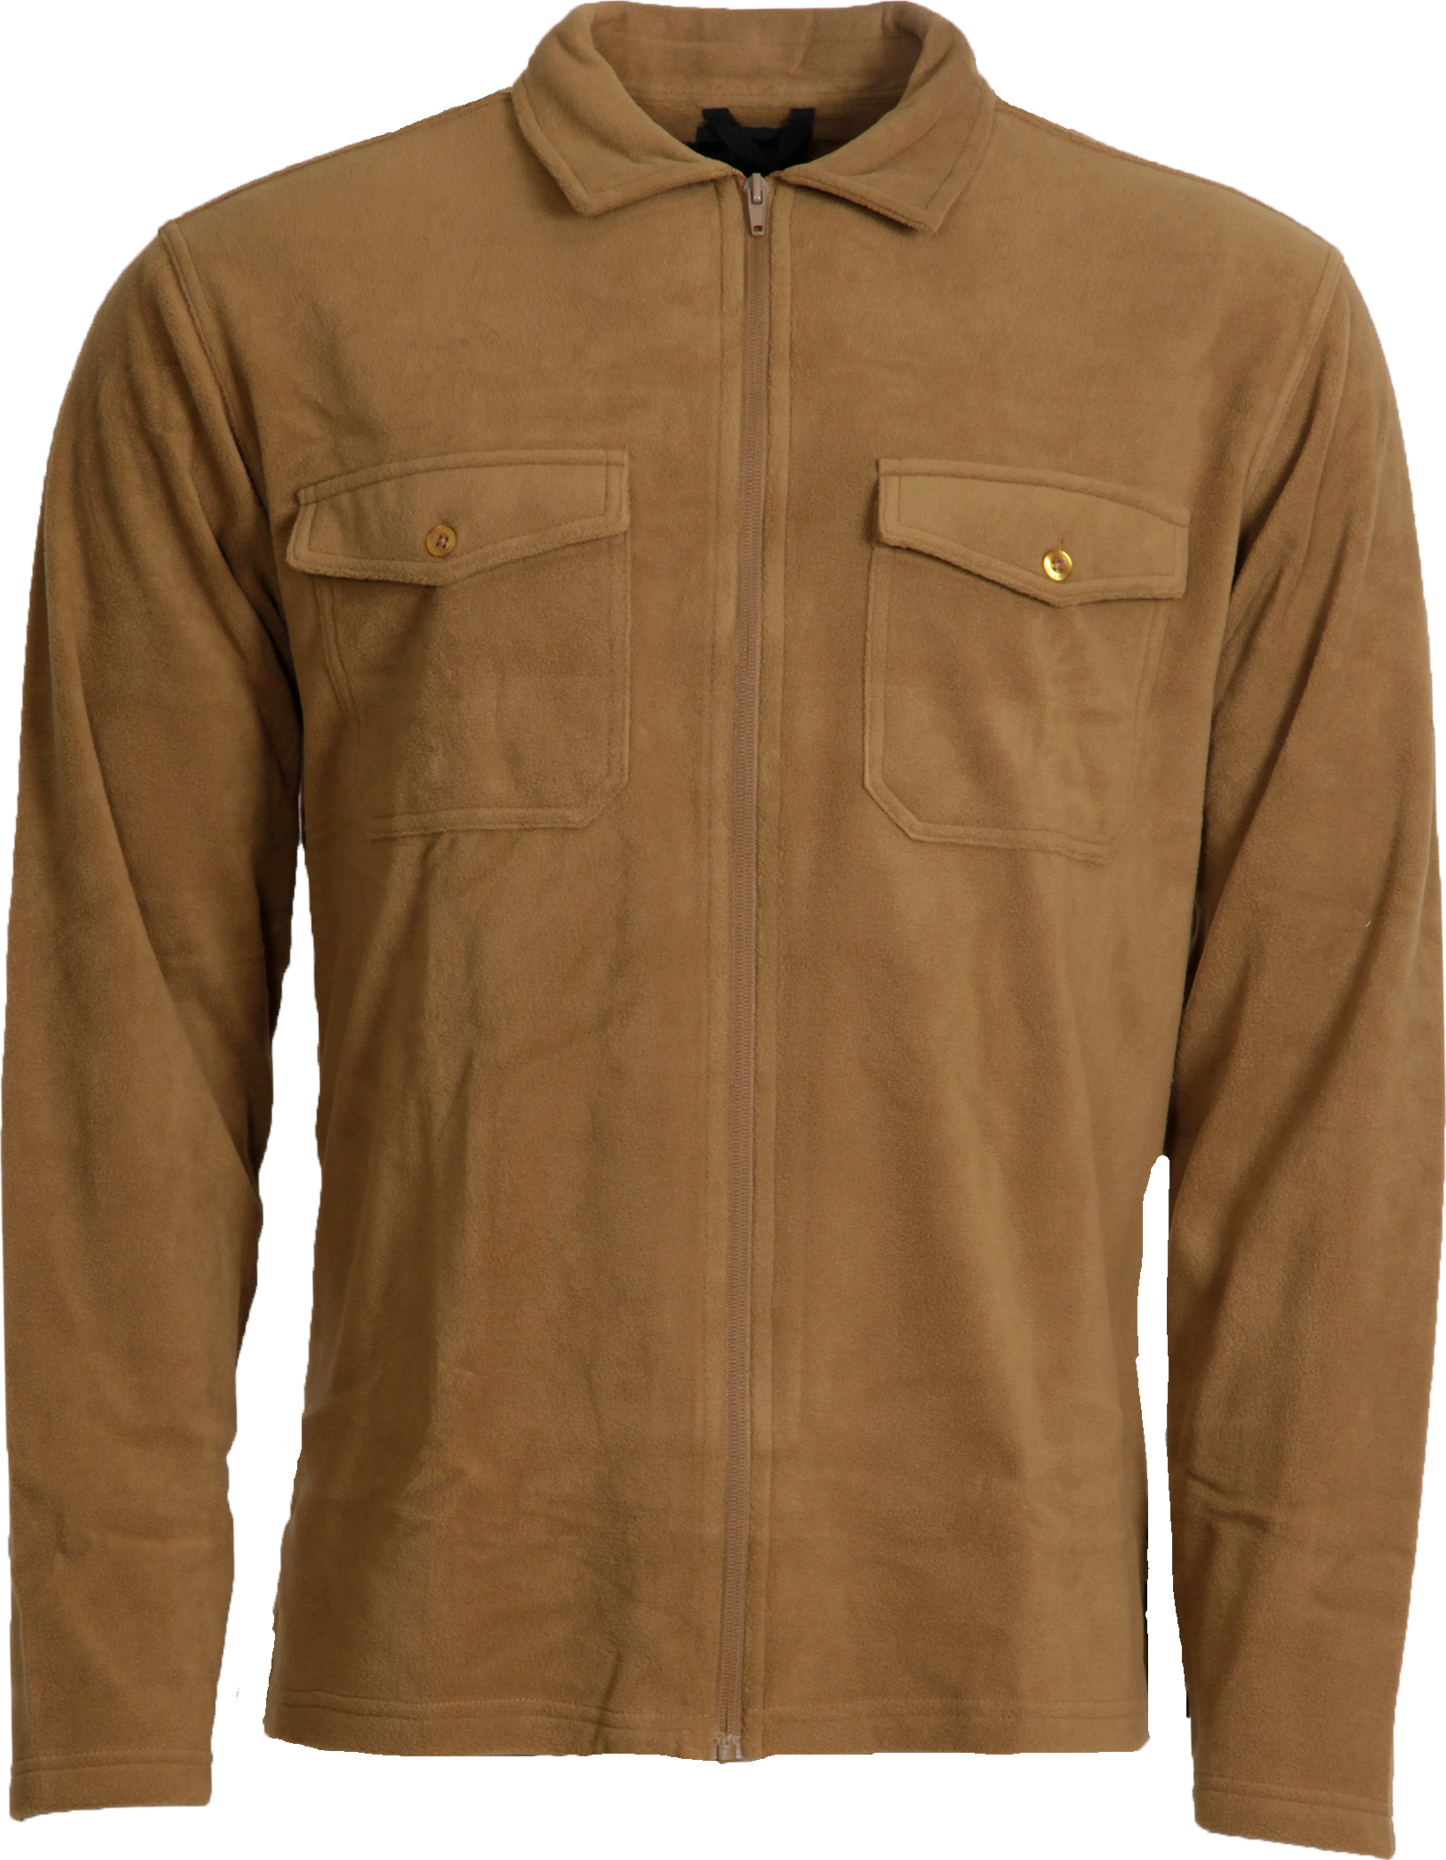 Dobsom Dobsom Men's Pescara Fleece Shirt Brown L, Brown